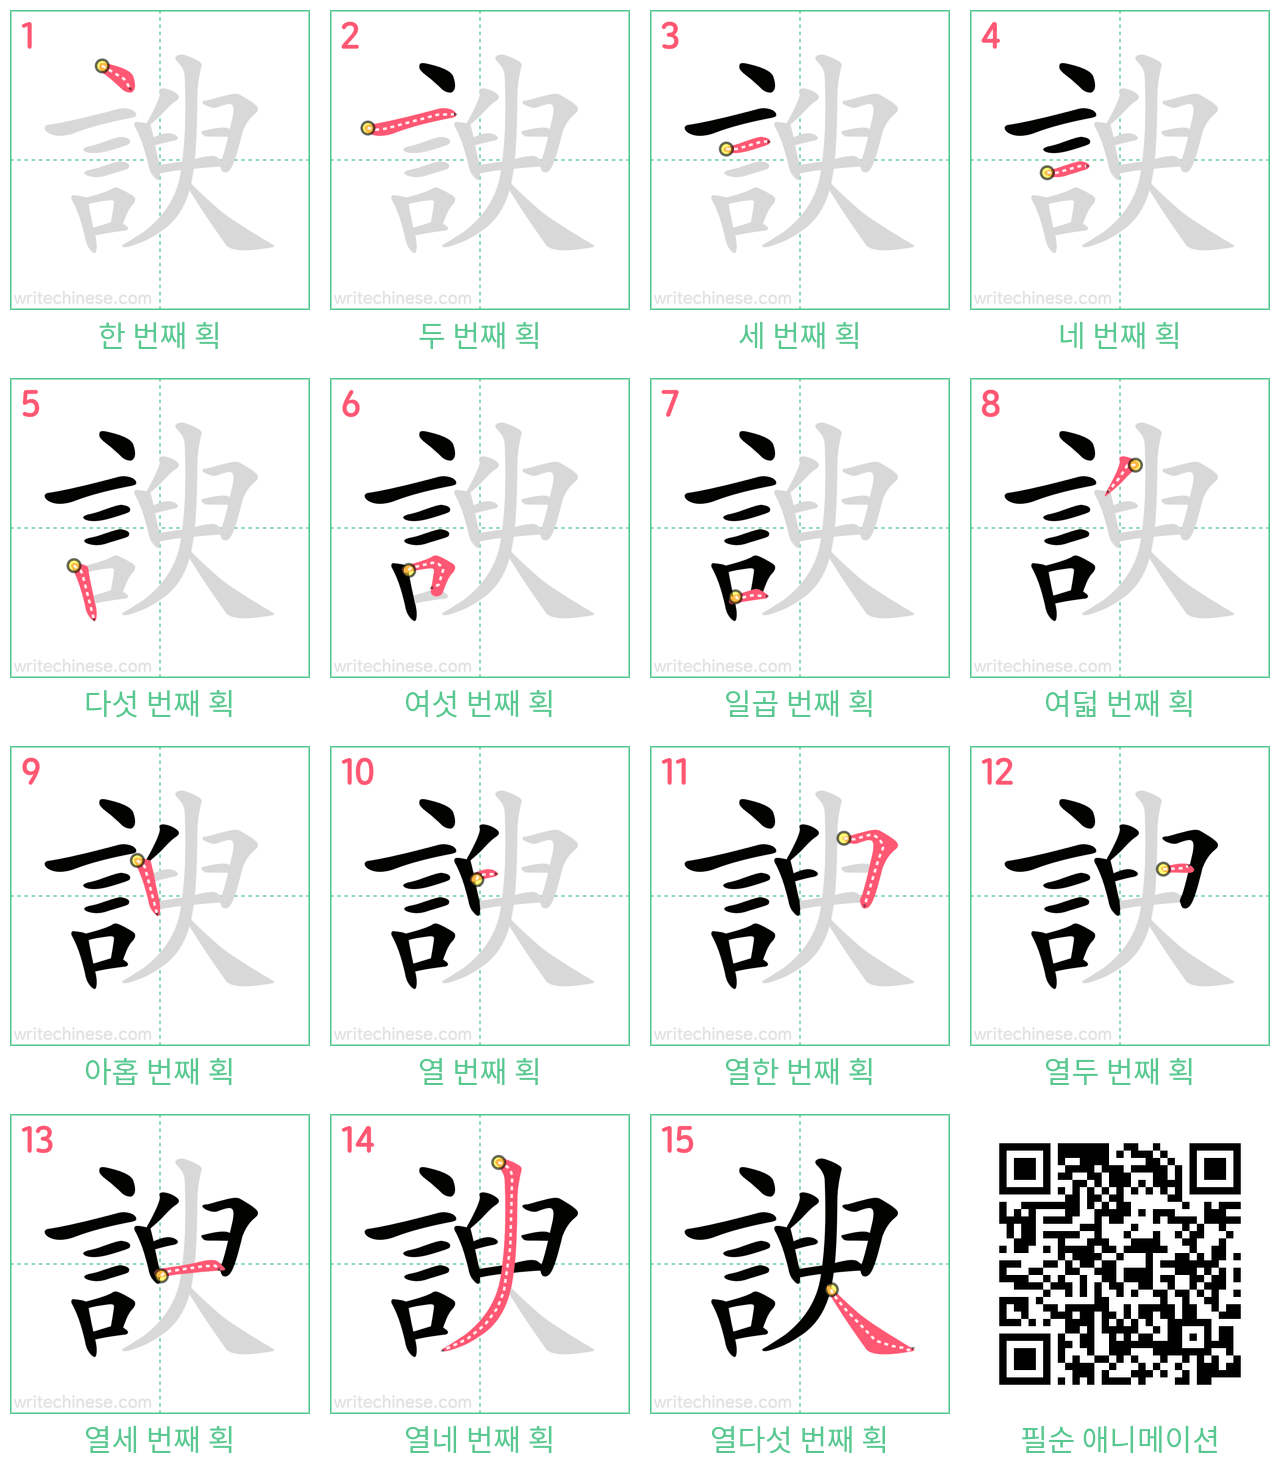 諛 step-by-step stroke order diagrams